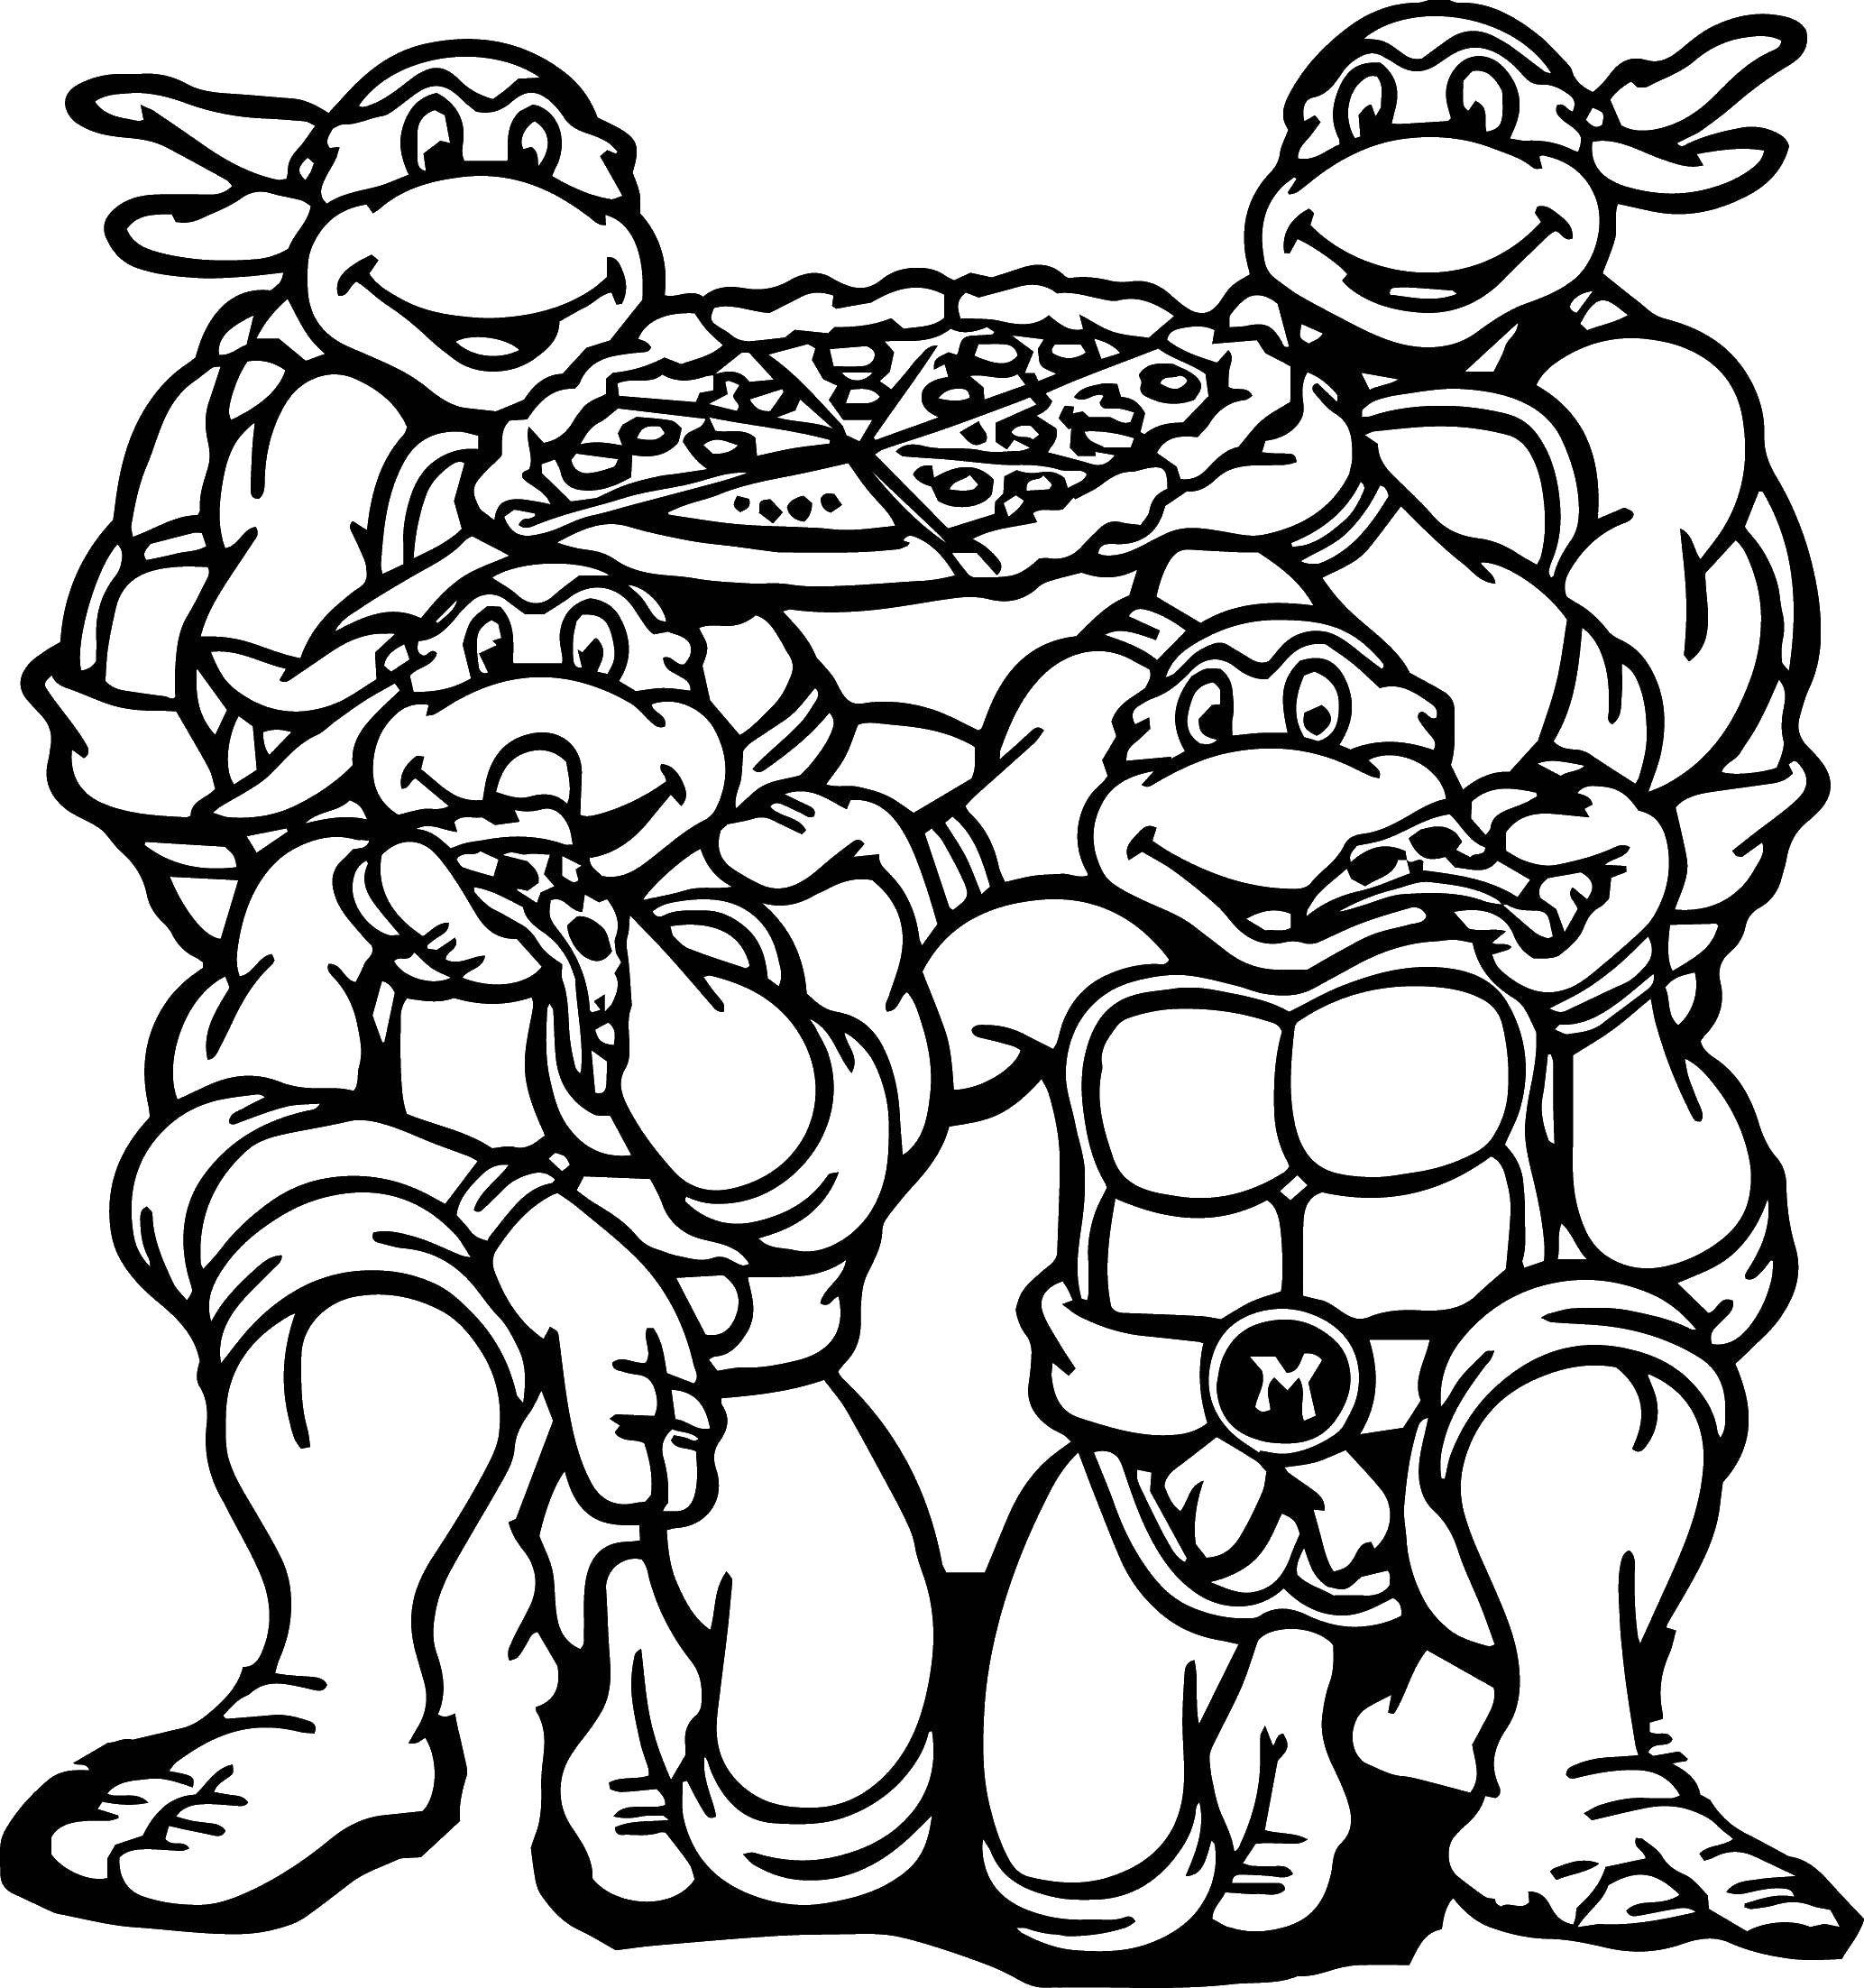 Название: Раскраска Черепашки ниндзя едят пиццу. Категория: ниндзя. Теги: Комиксы, Черепашки Ниндзя.